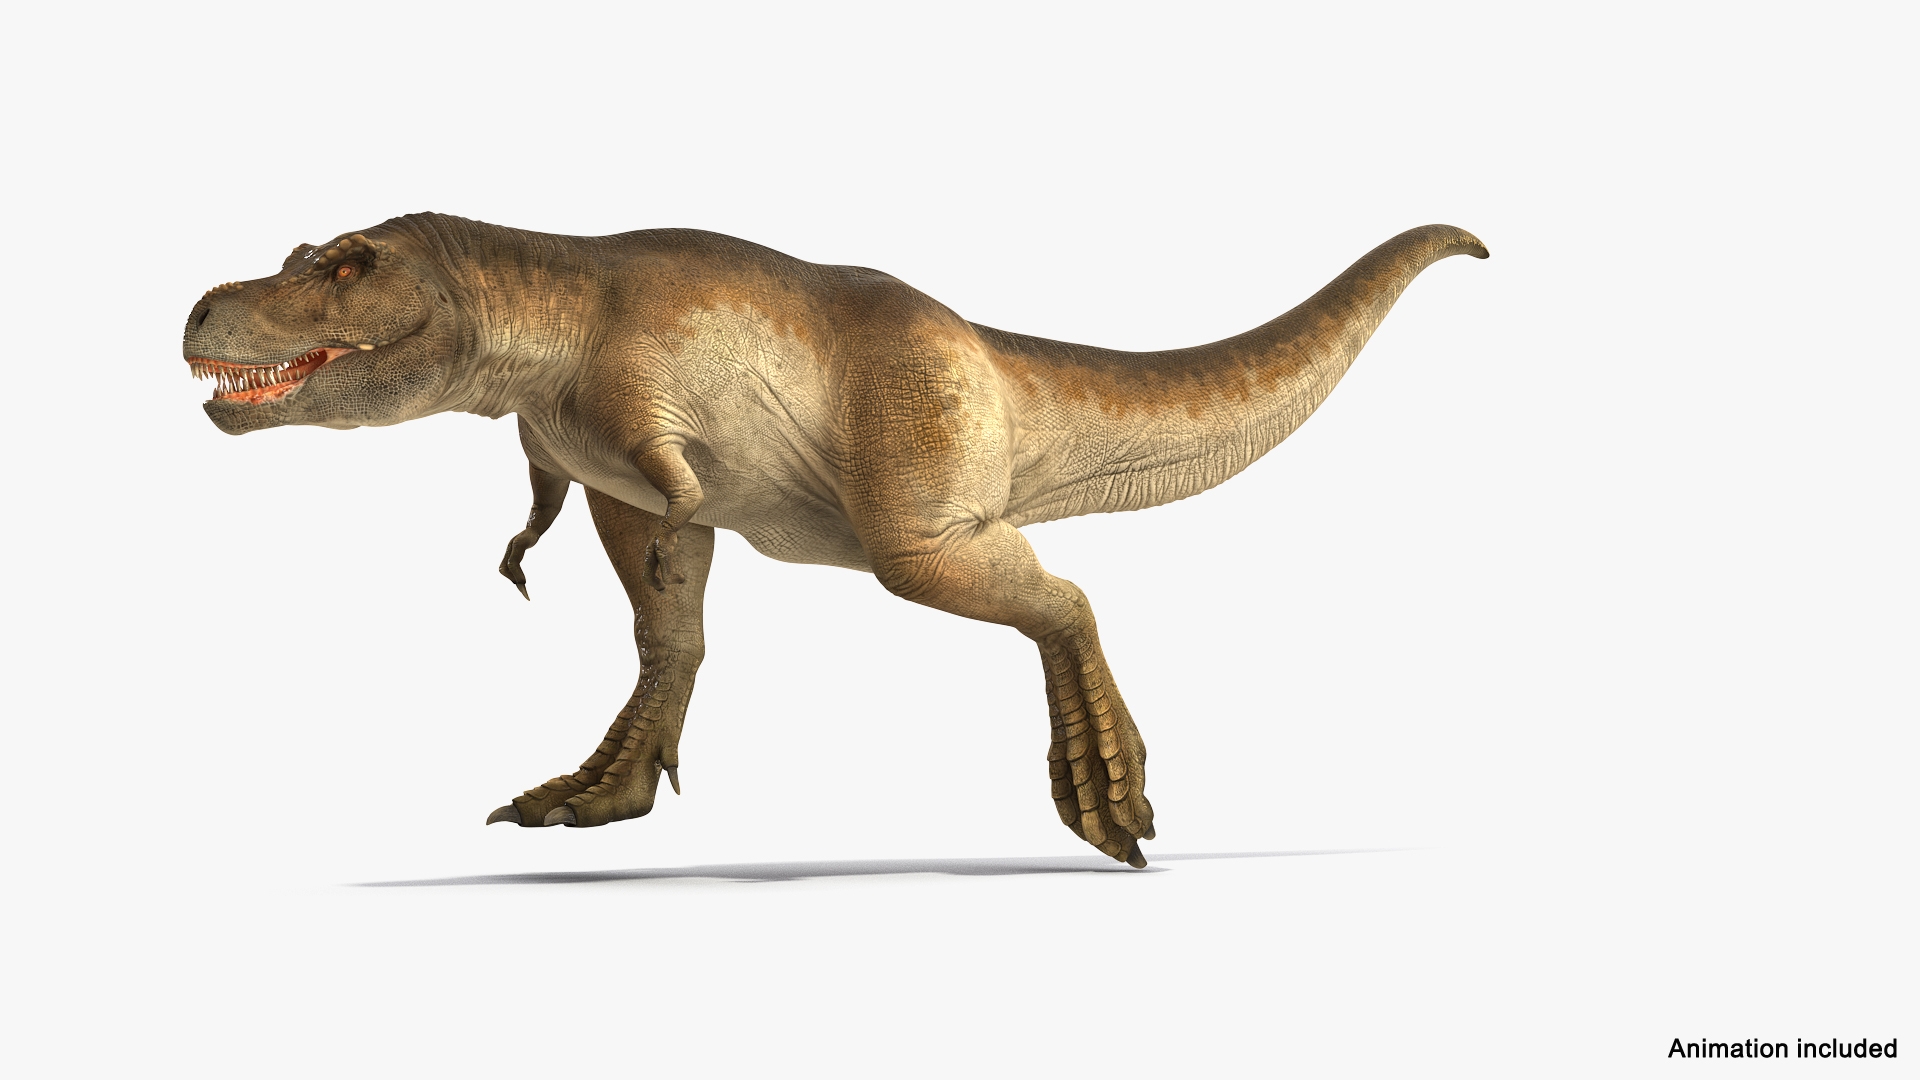 T-Rex dinosaur running. 3D illustration. - Stock Illustration